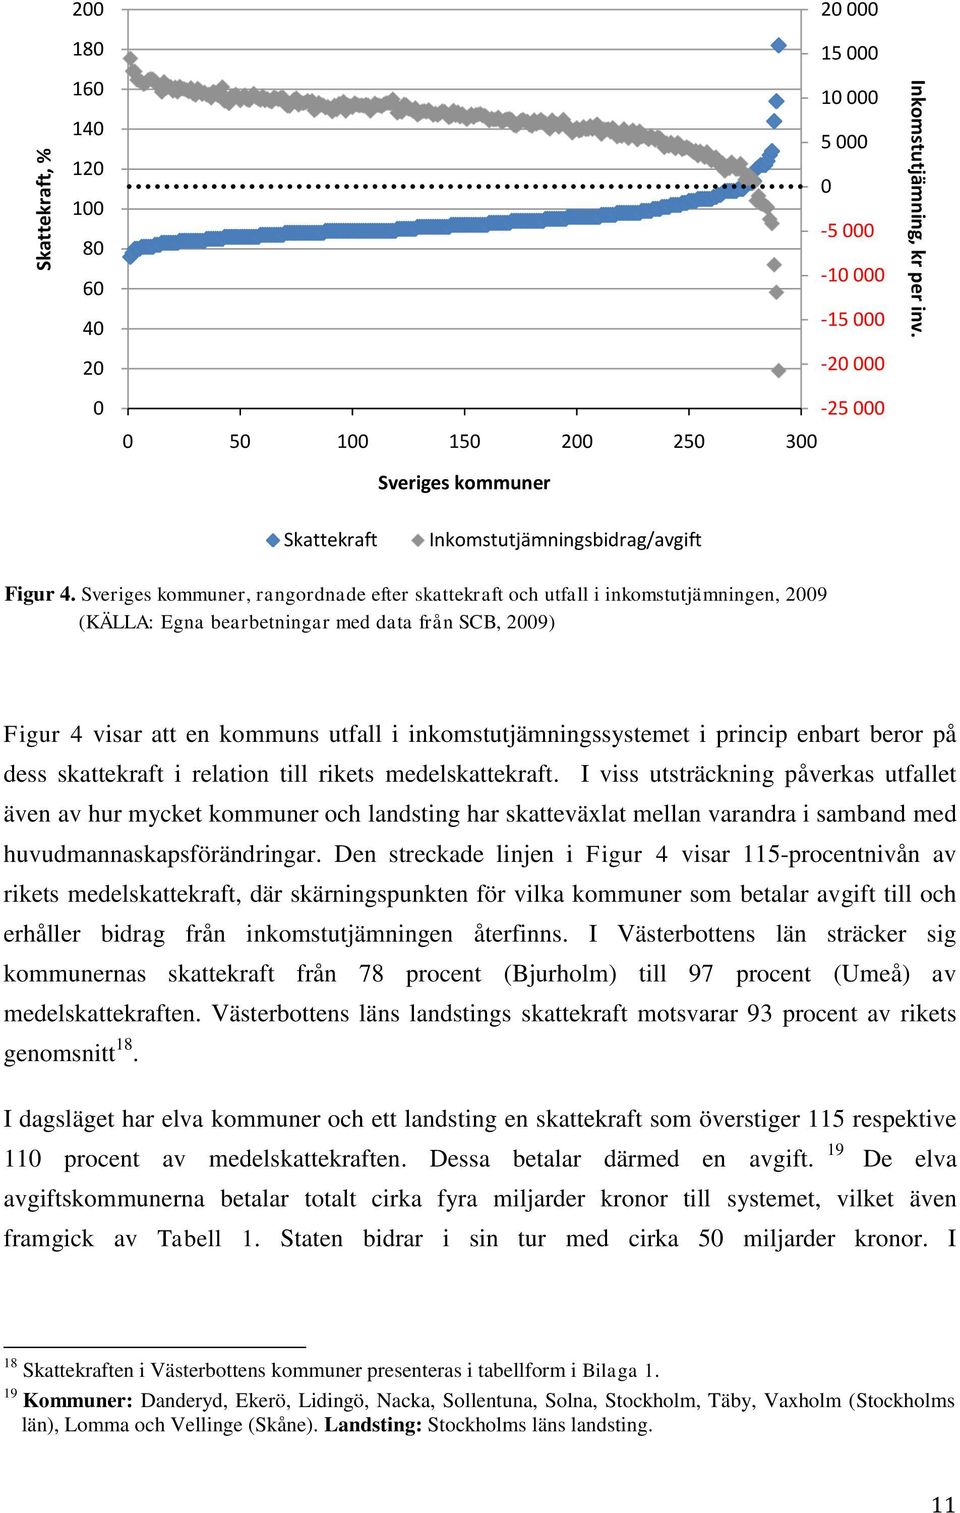 Sveriges kommuner, rangordnade efter skattekraft och utfall i inkomstutjämningen, 2009 (KÄLLA: Egna bearbetningar med data från SCB, 2009) Figur 4 visar att en kommuns utfall i